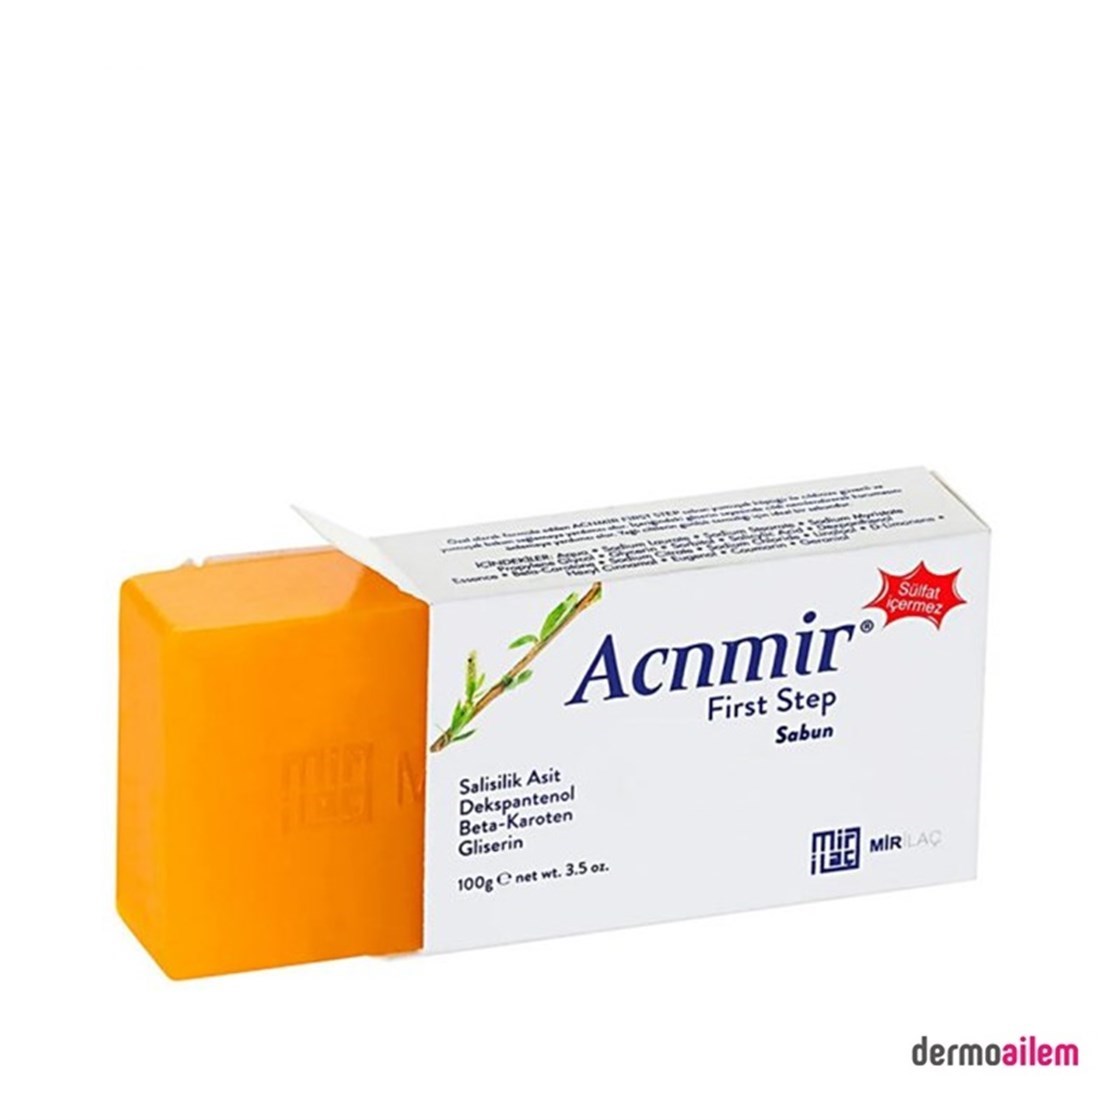 Acnmir First Step Sabun 100 gr Fiyatları İndirimli | Dermoailem.com